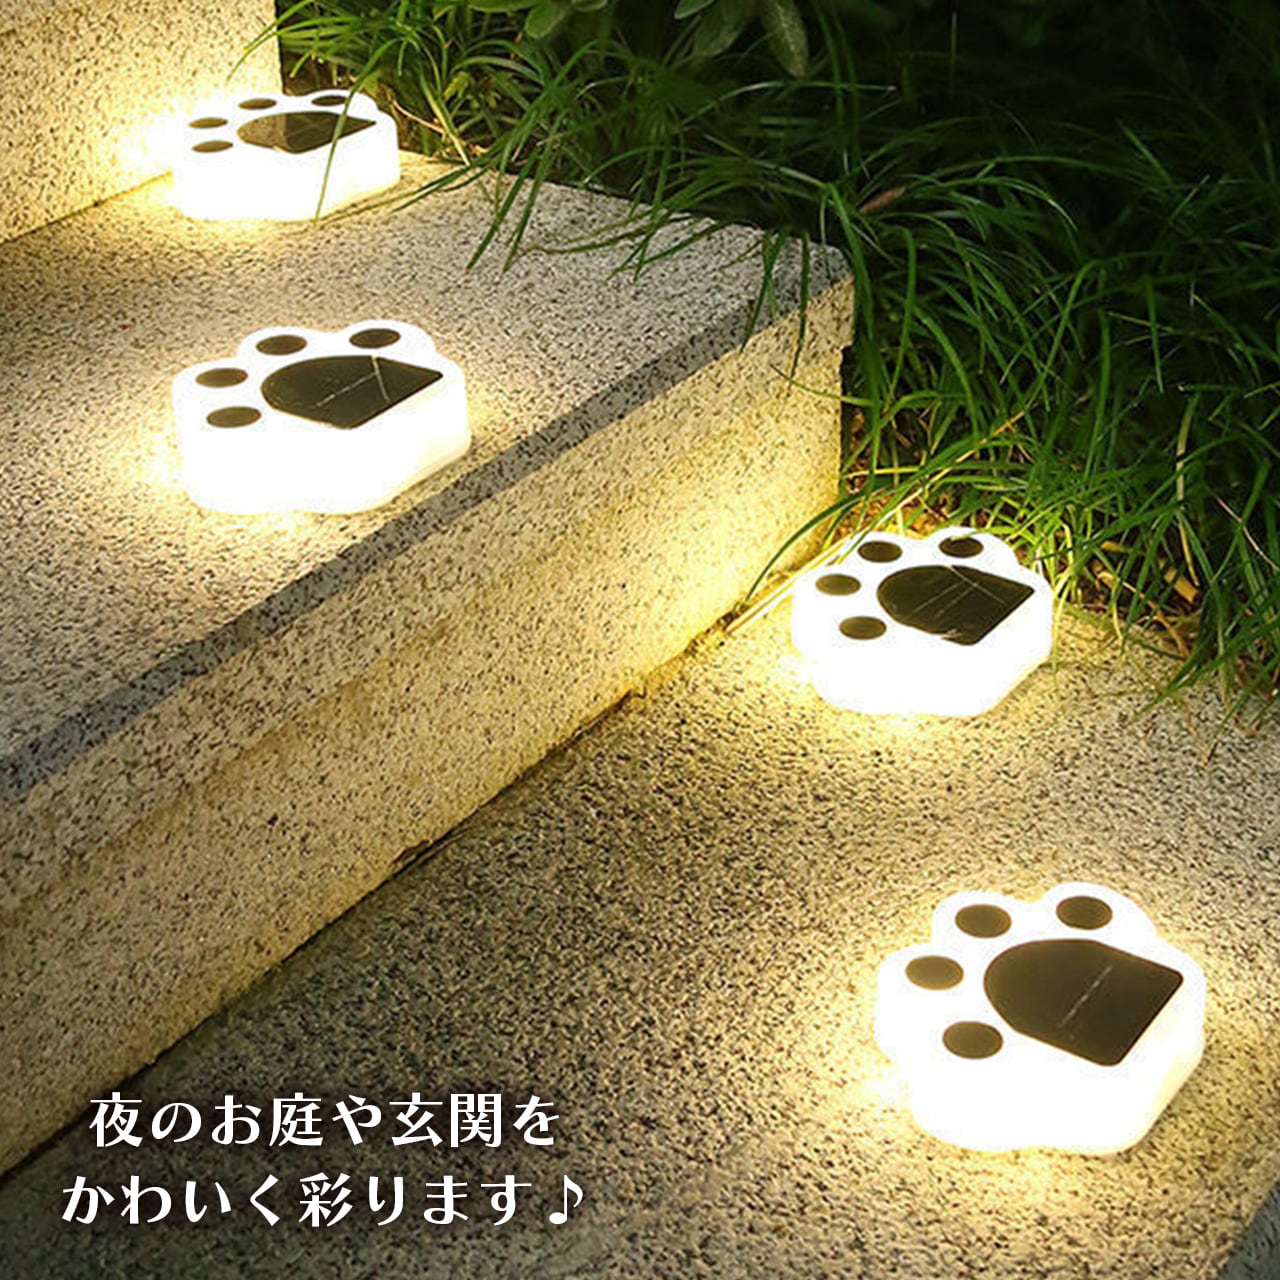 猫 肉球 ソーラーライト ガーデンライト LED センサーライト 明暗